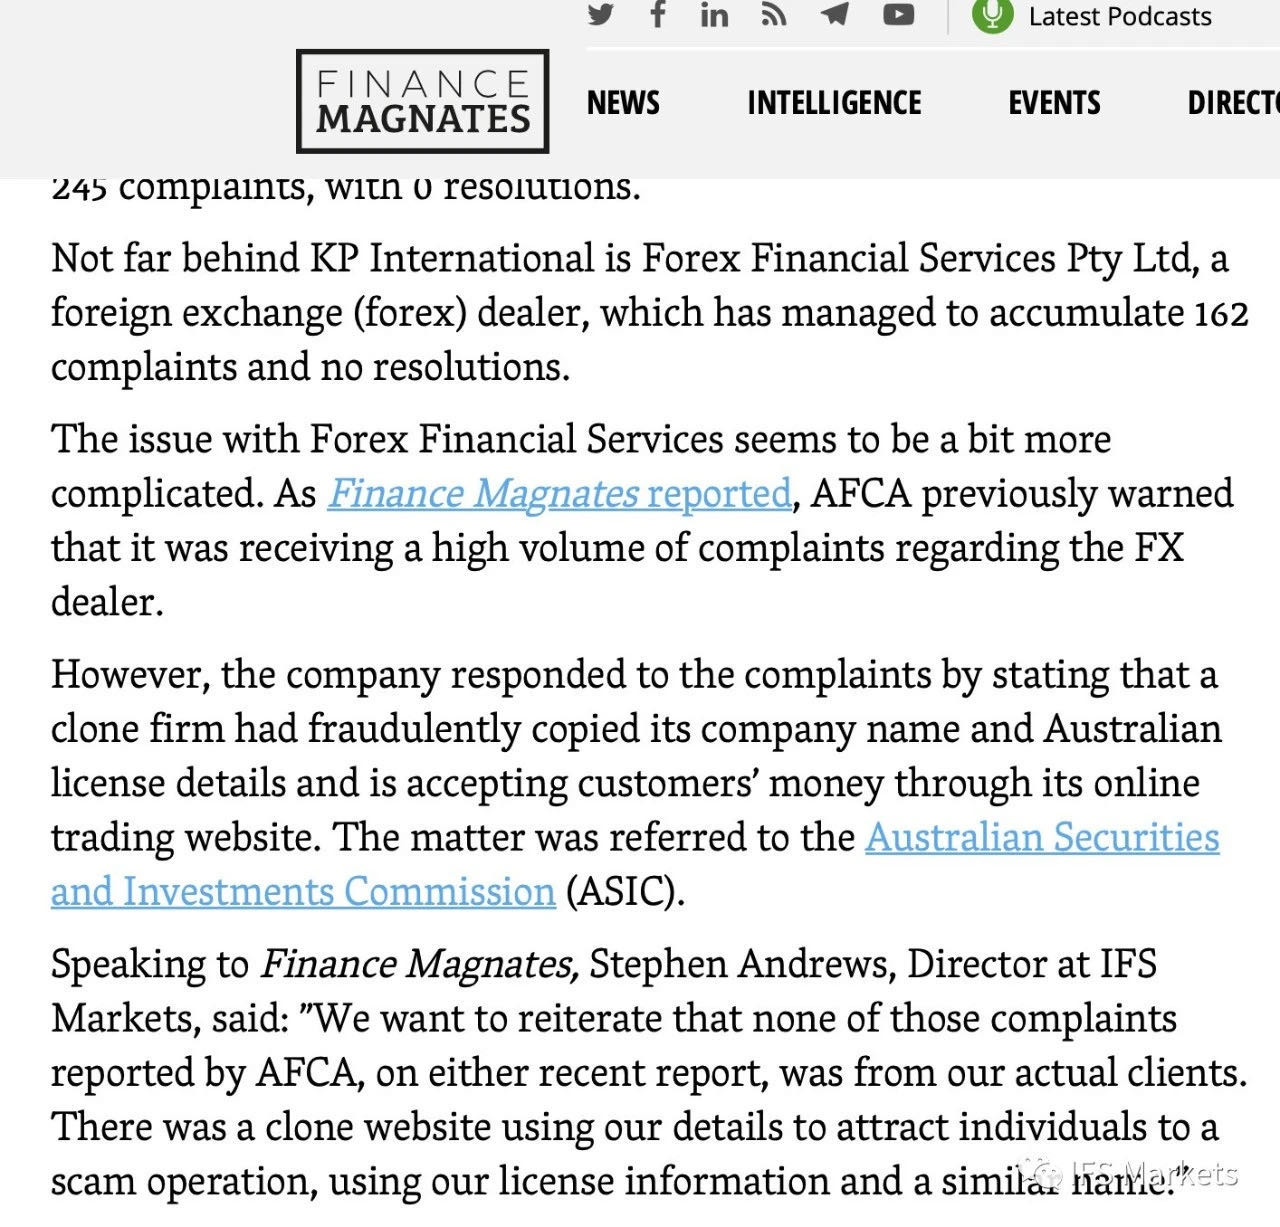 IFS Markets品牌被山寨克隆，无辜躺了数百枪！